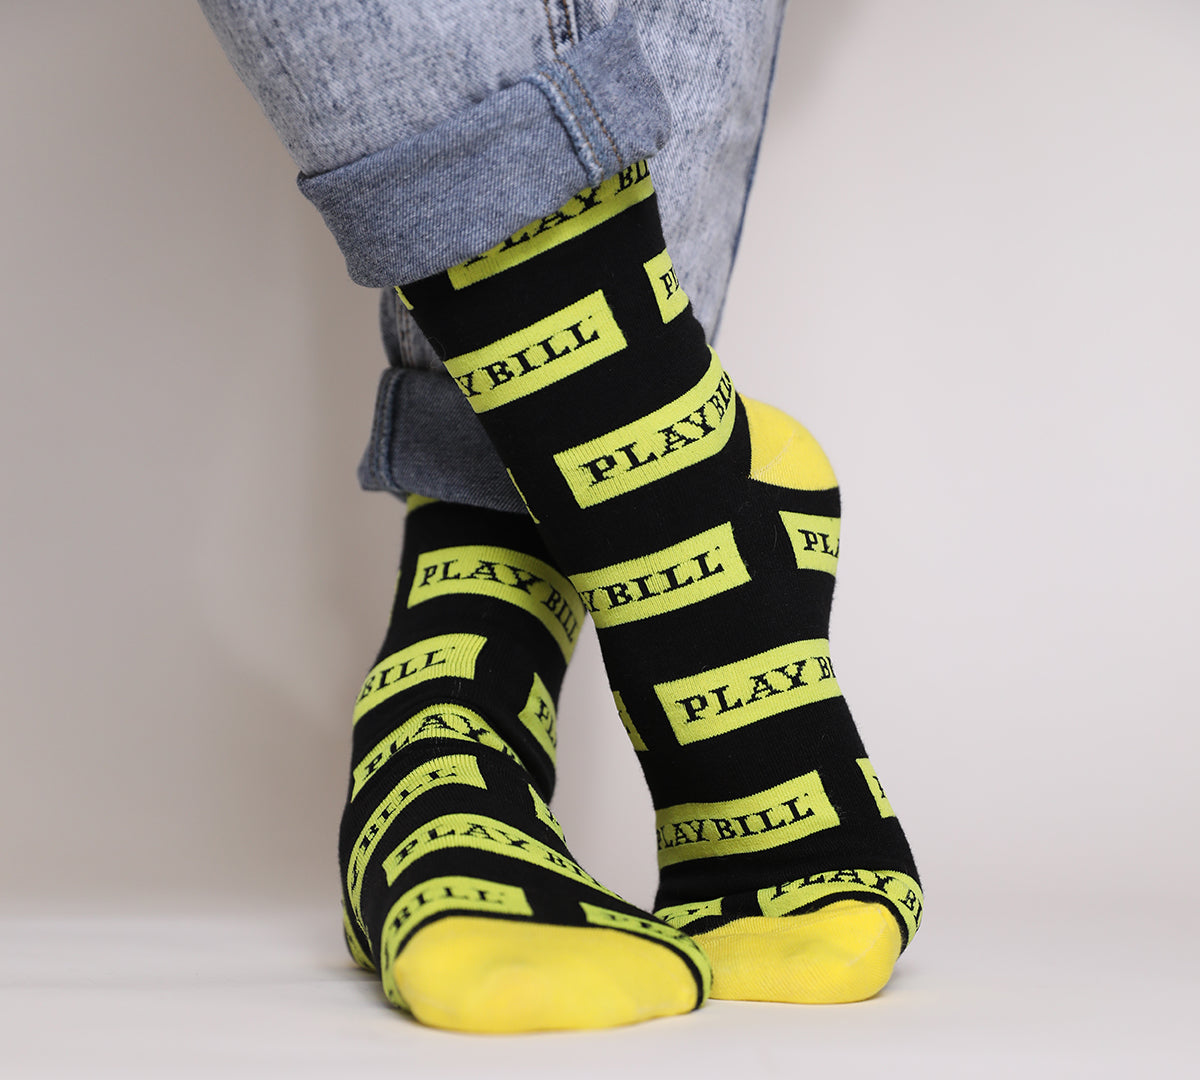 Playbill Socks